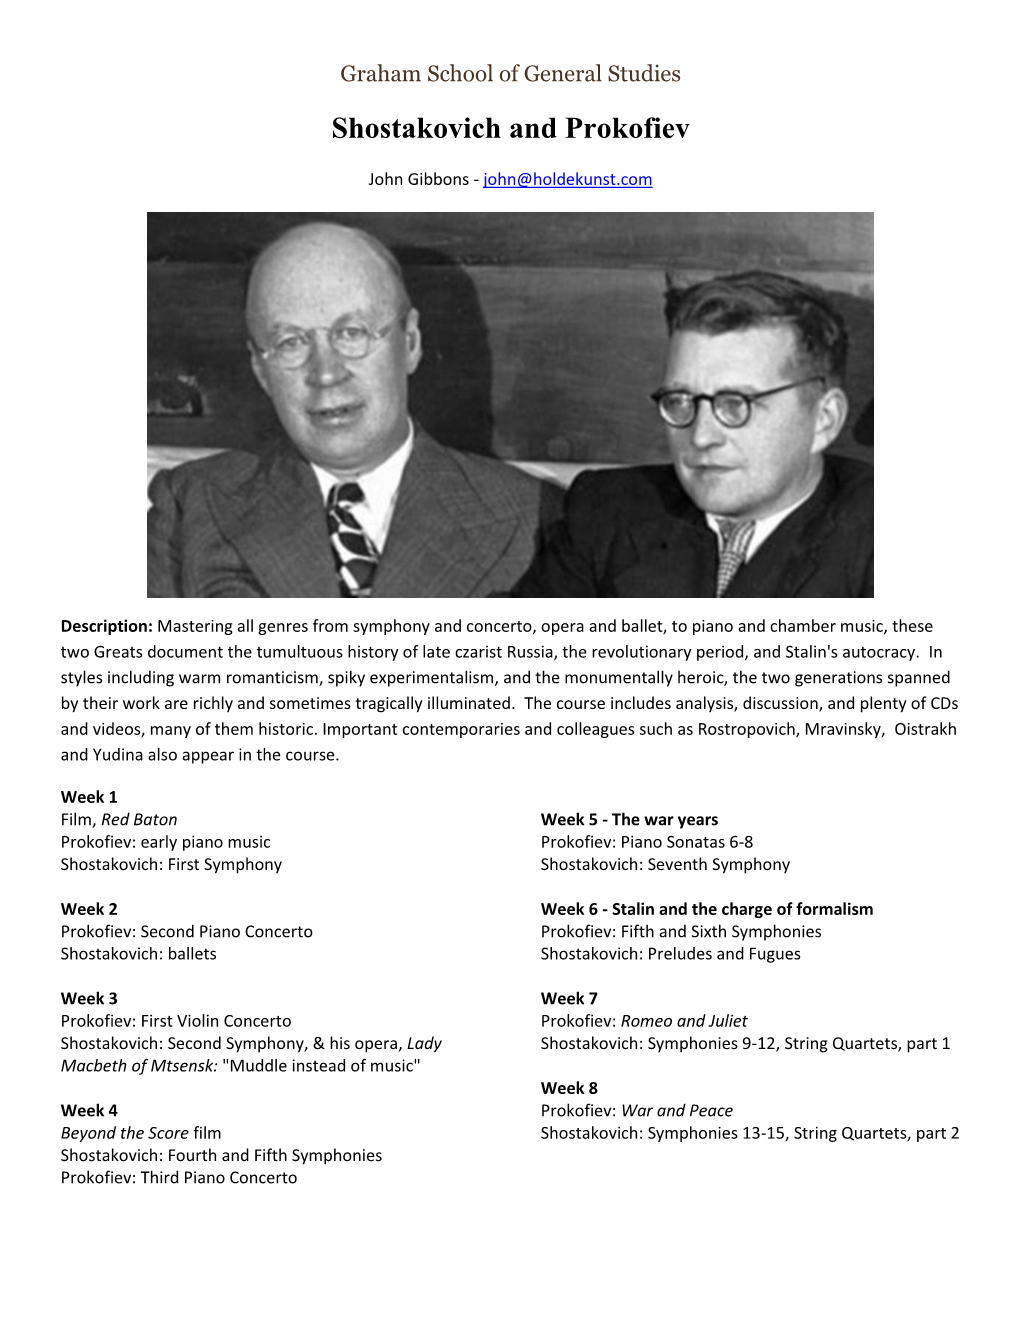 Shostakovich and Prokofiev